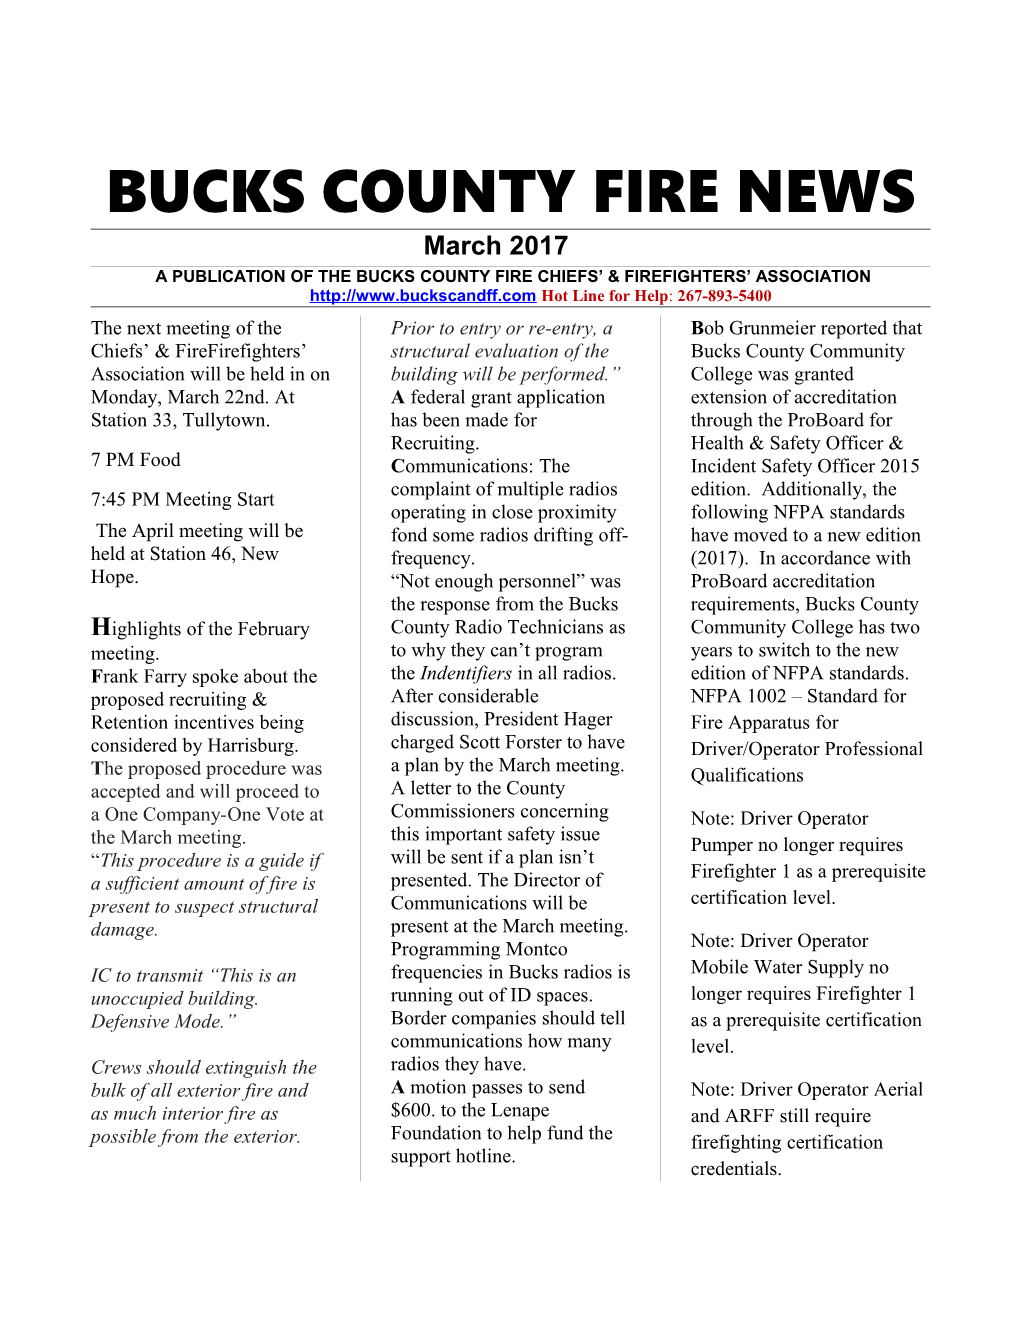 1Bucks Co. Fire News